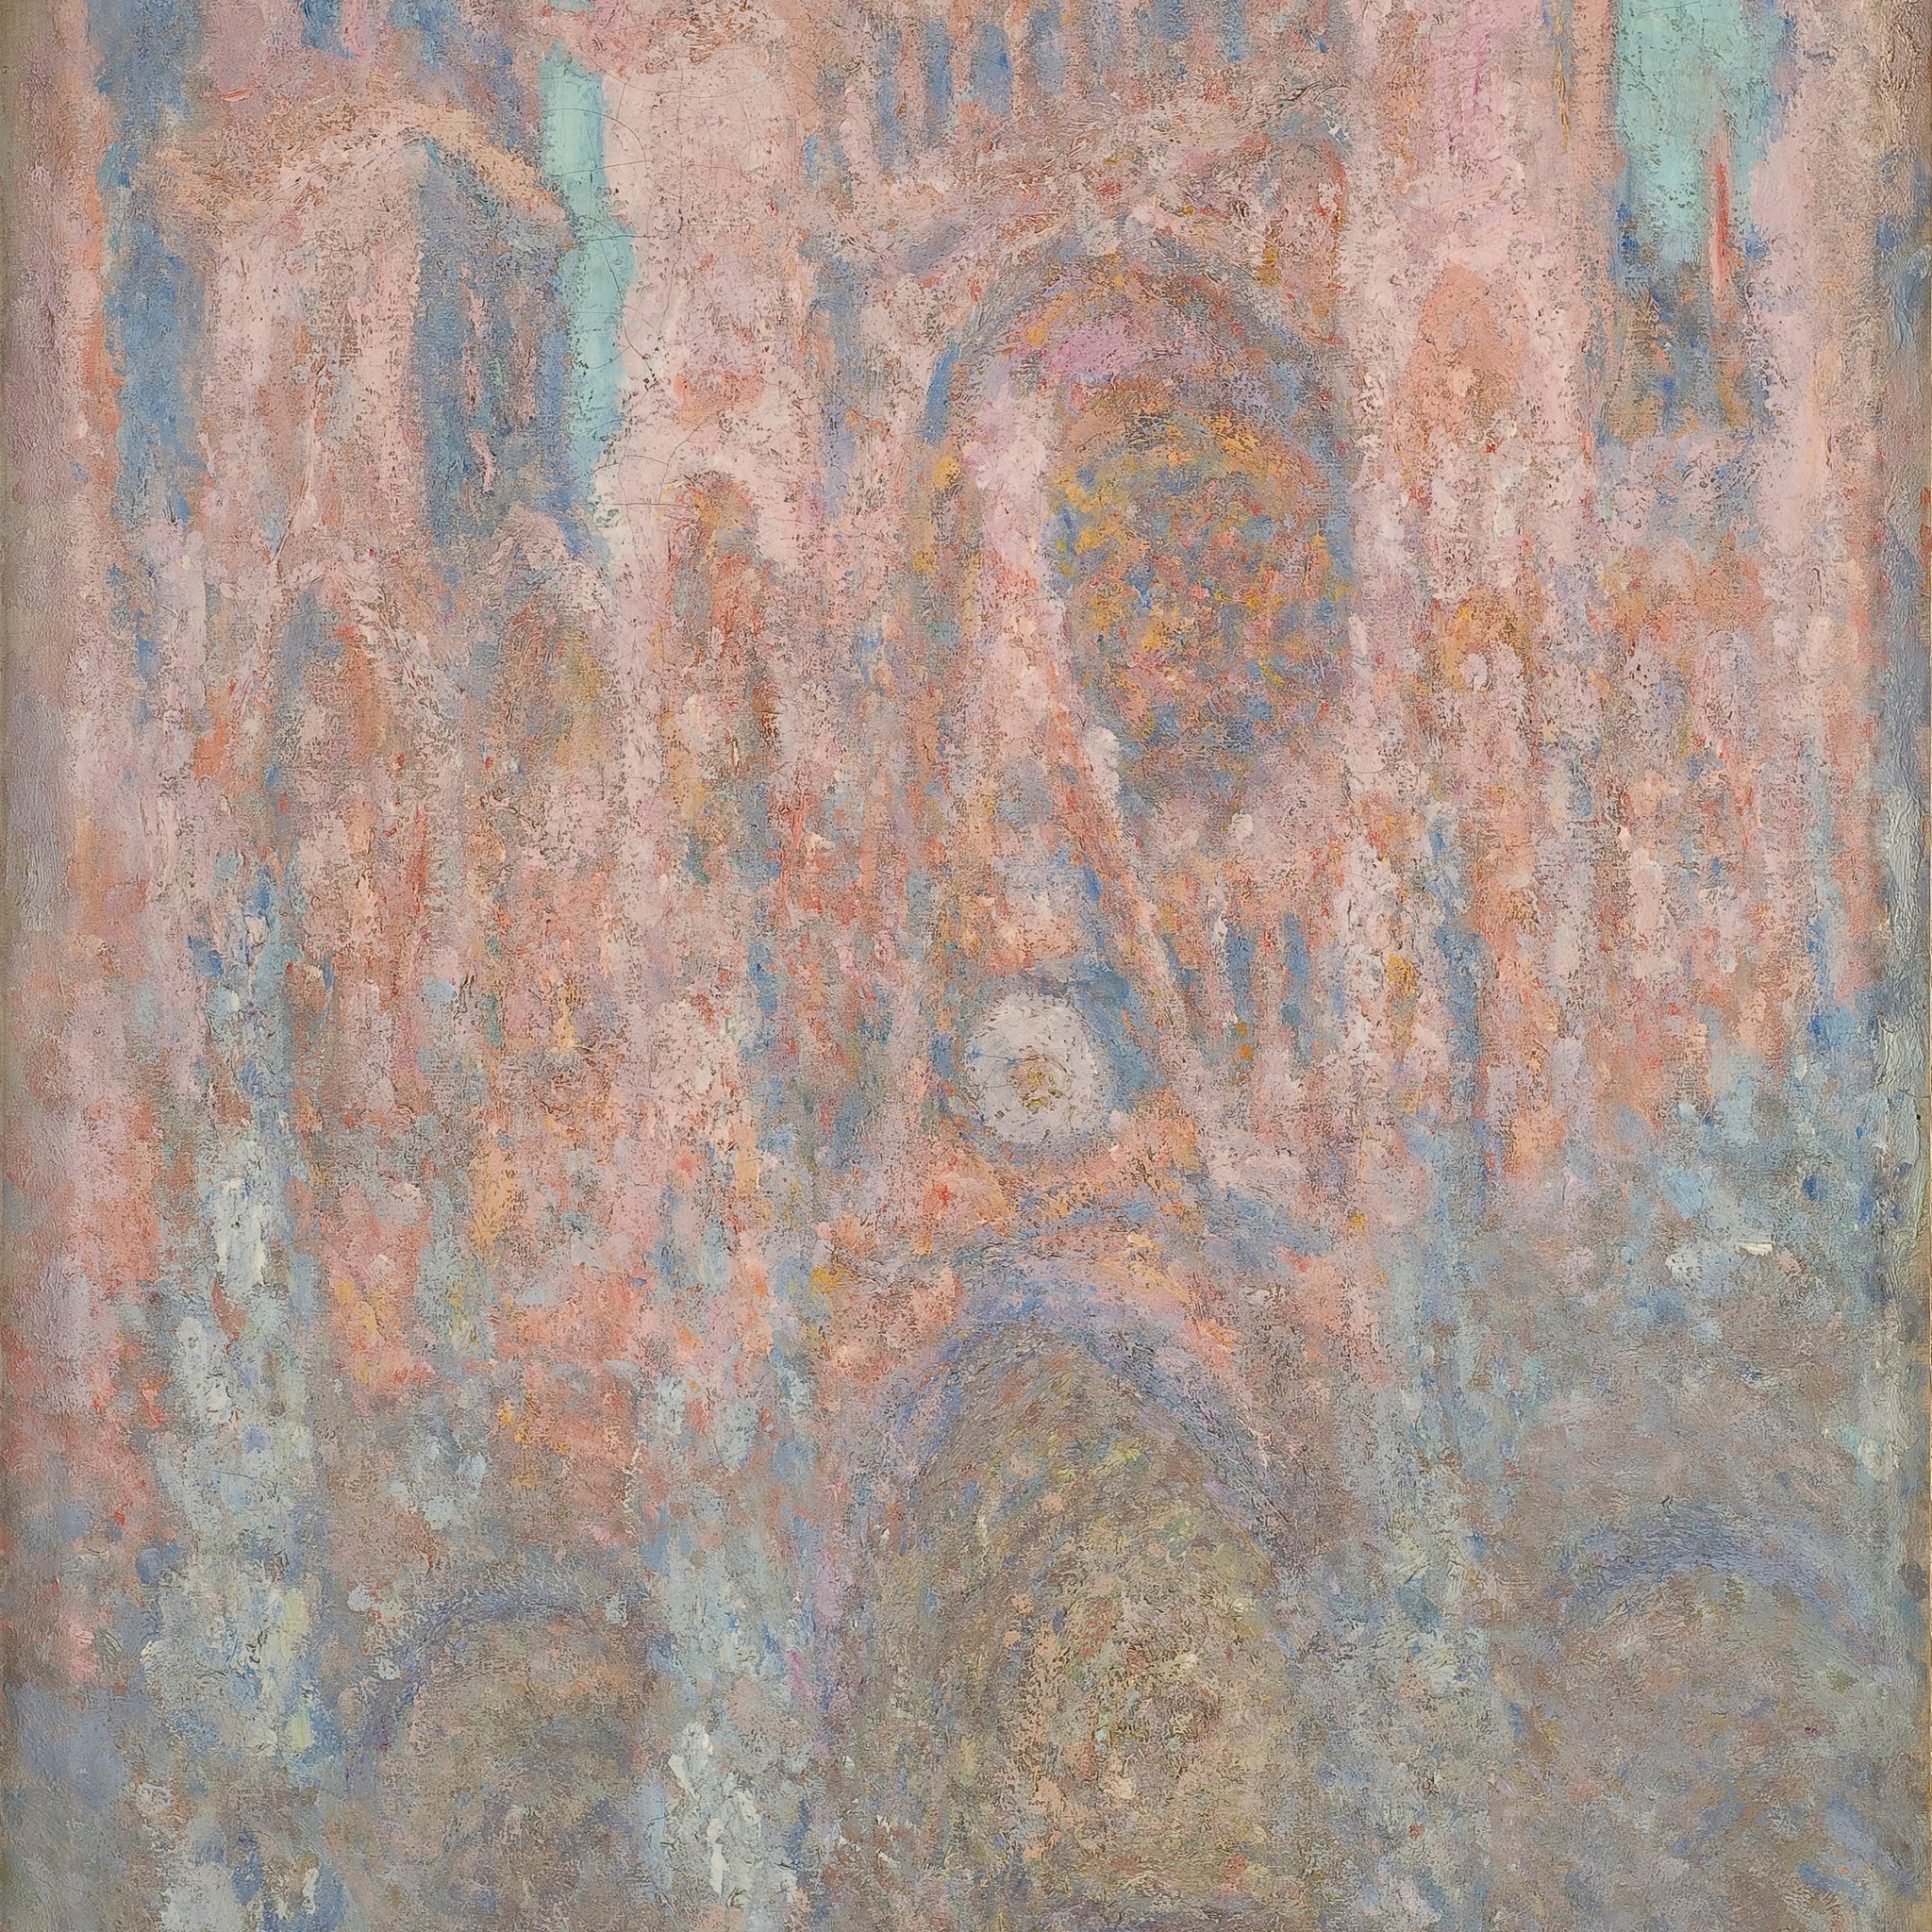 La Cathédrale de Rouen (W1329) - Claude Monet